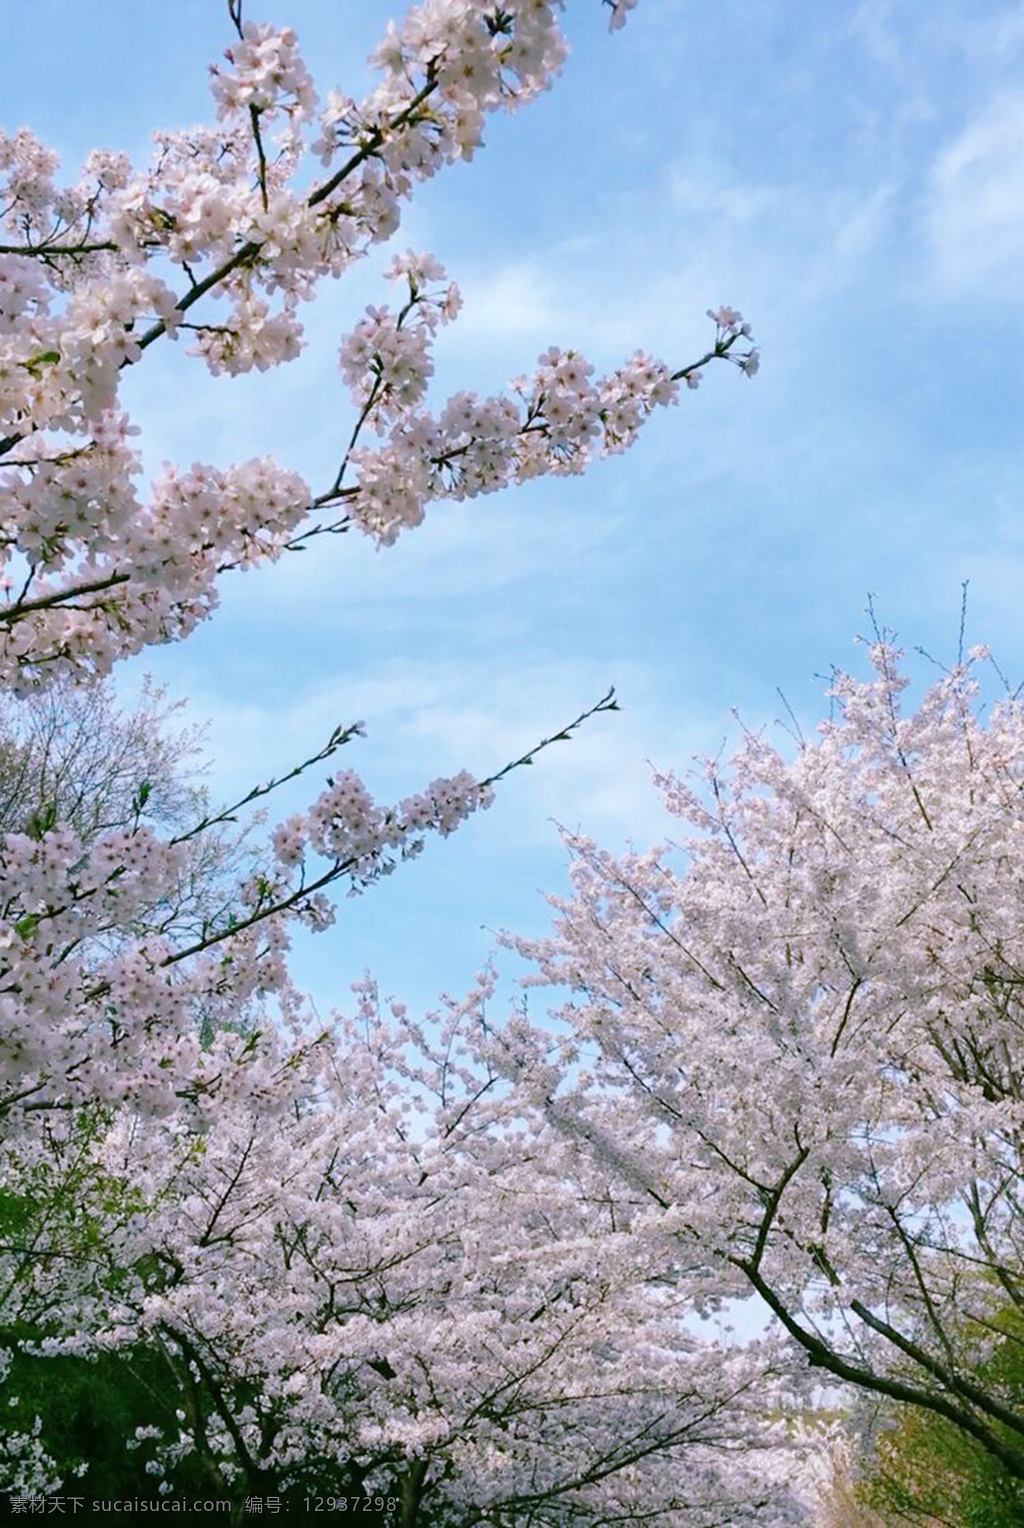 春日樱花 花 樱花 春日 春天 清凉 绿色 粉色 壁纸 静物 花草 桃花 春游 旅游 天空 蓝天 自然景观 自然风景